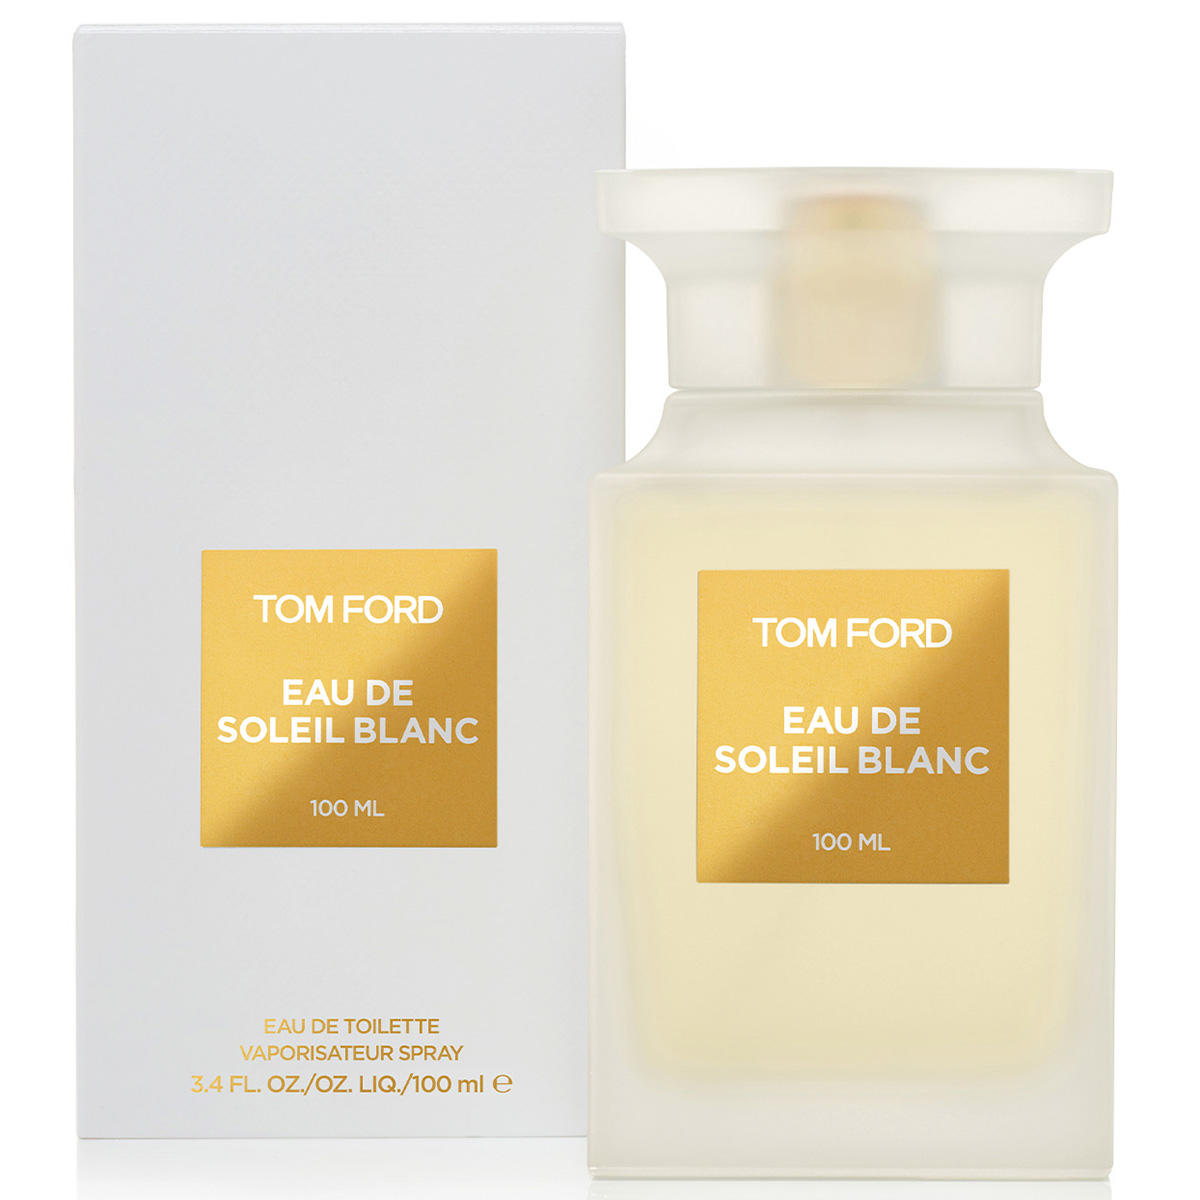 Tom Ford Eau de Soleil Blanc Eau de Toilette Spray 100 ml - 2